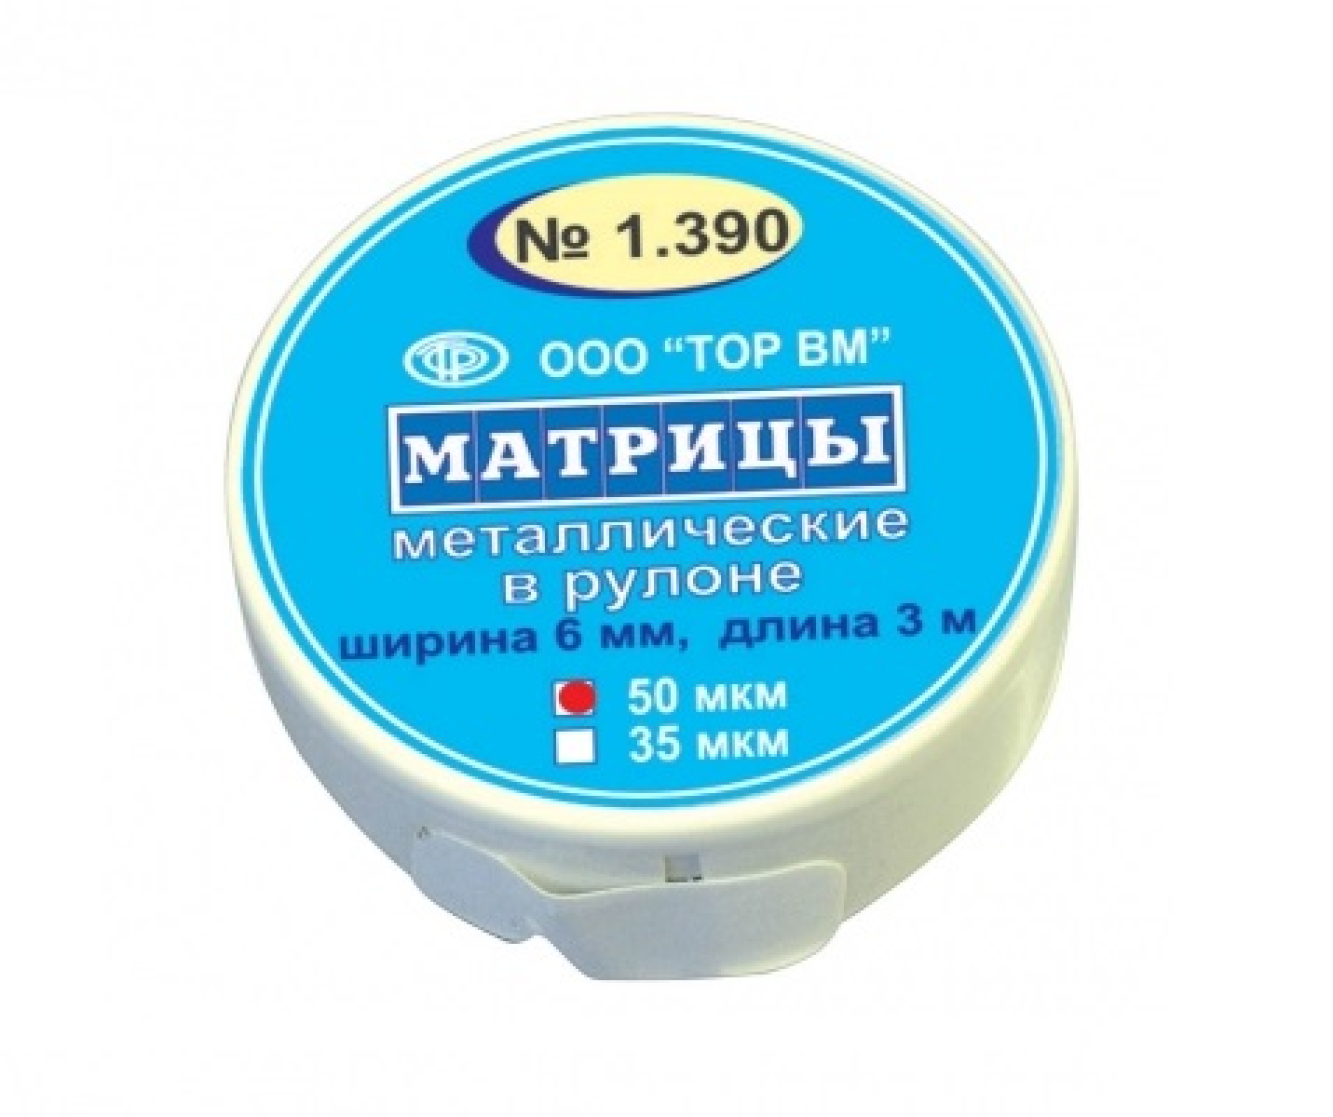 Матрицы металлические, в рулоне, 1.390, ТОР ВМ (Россия)